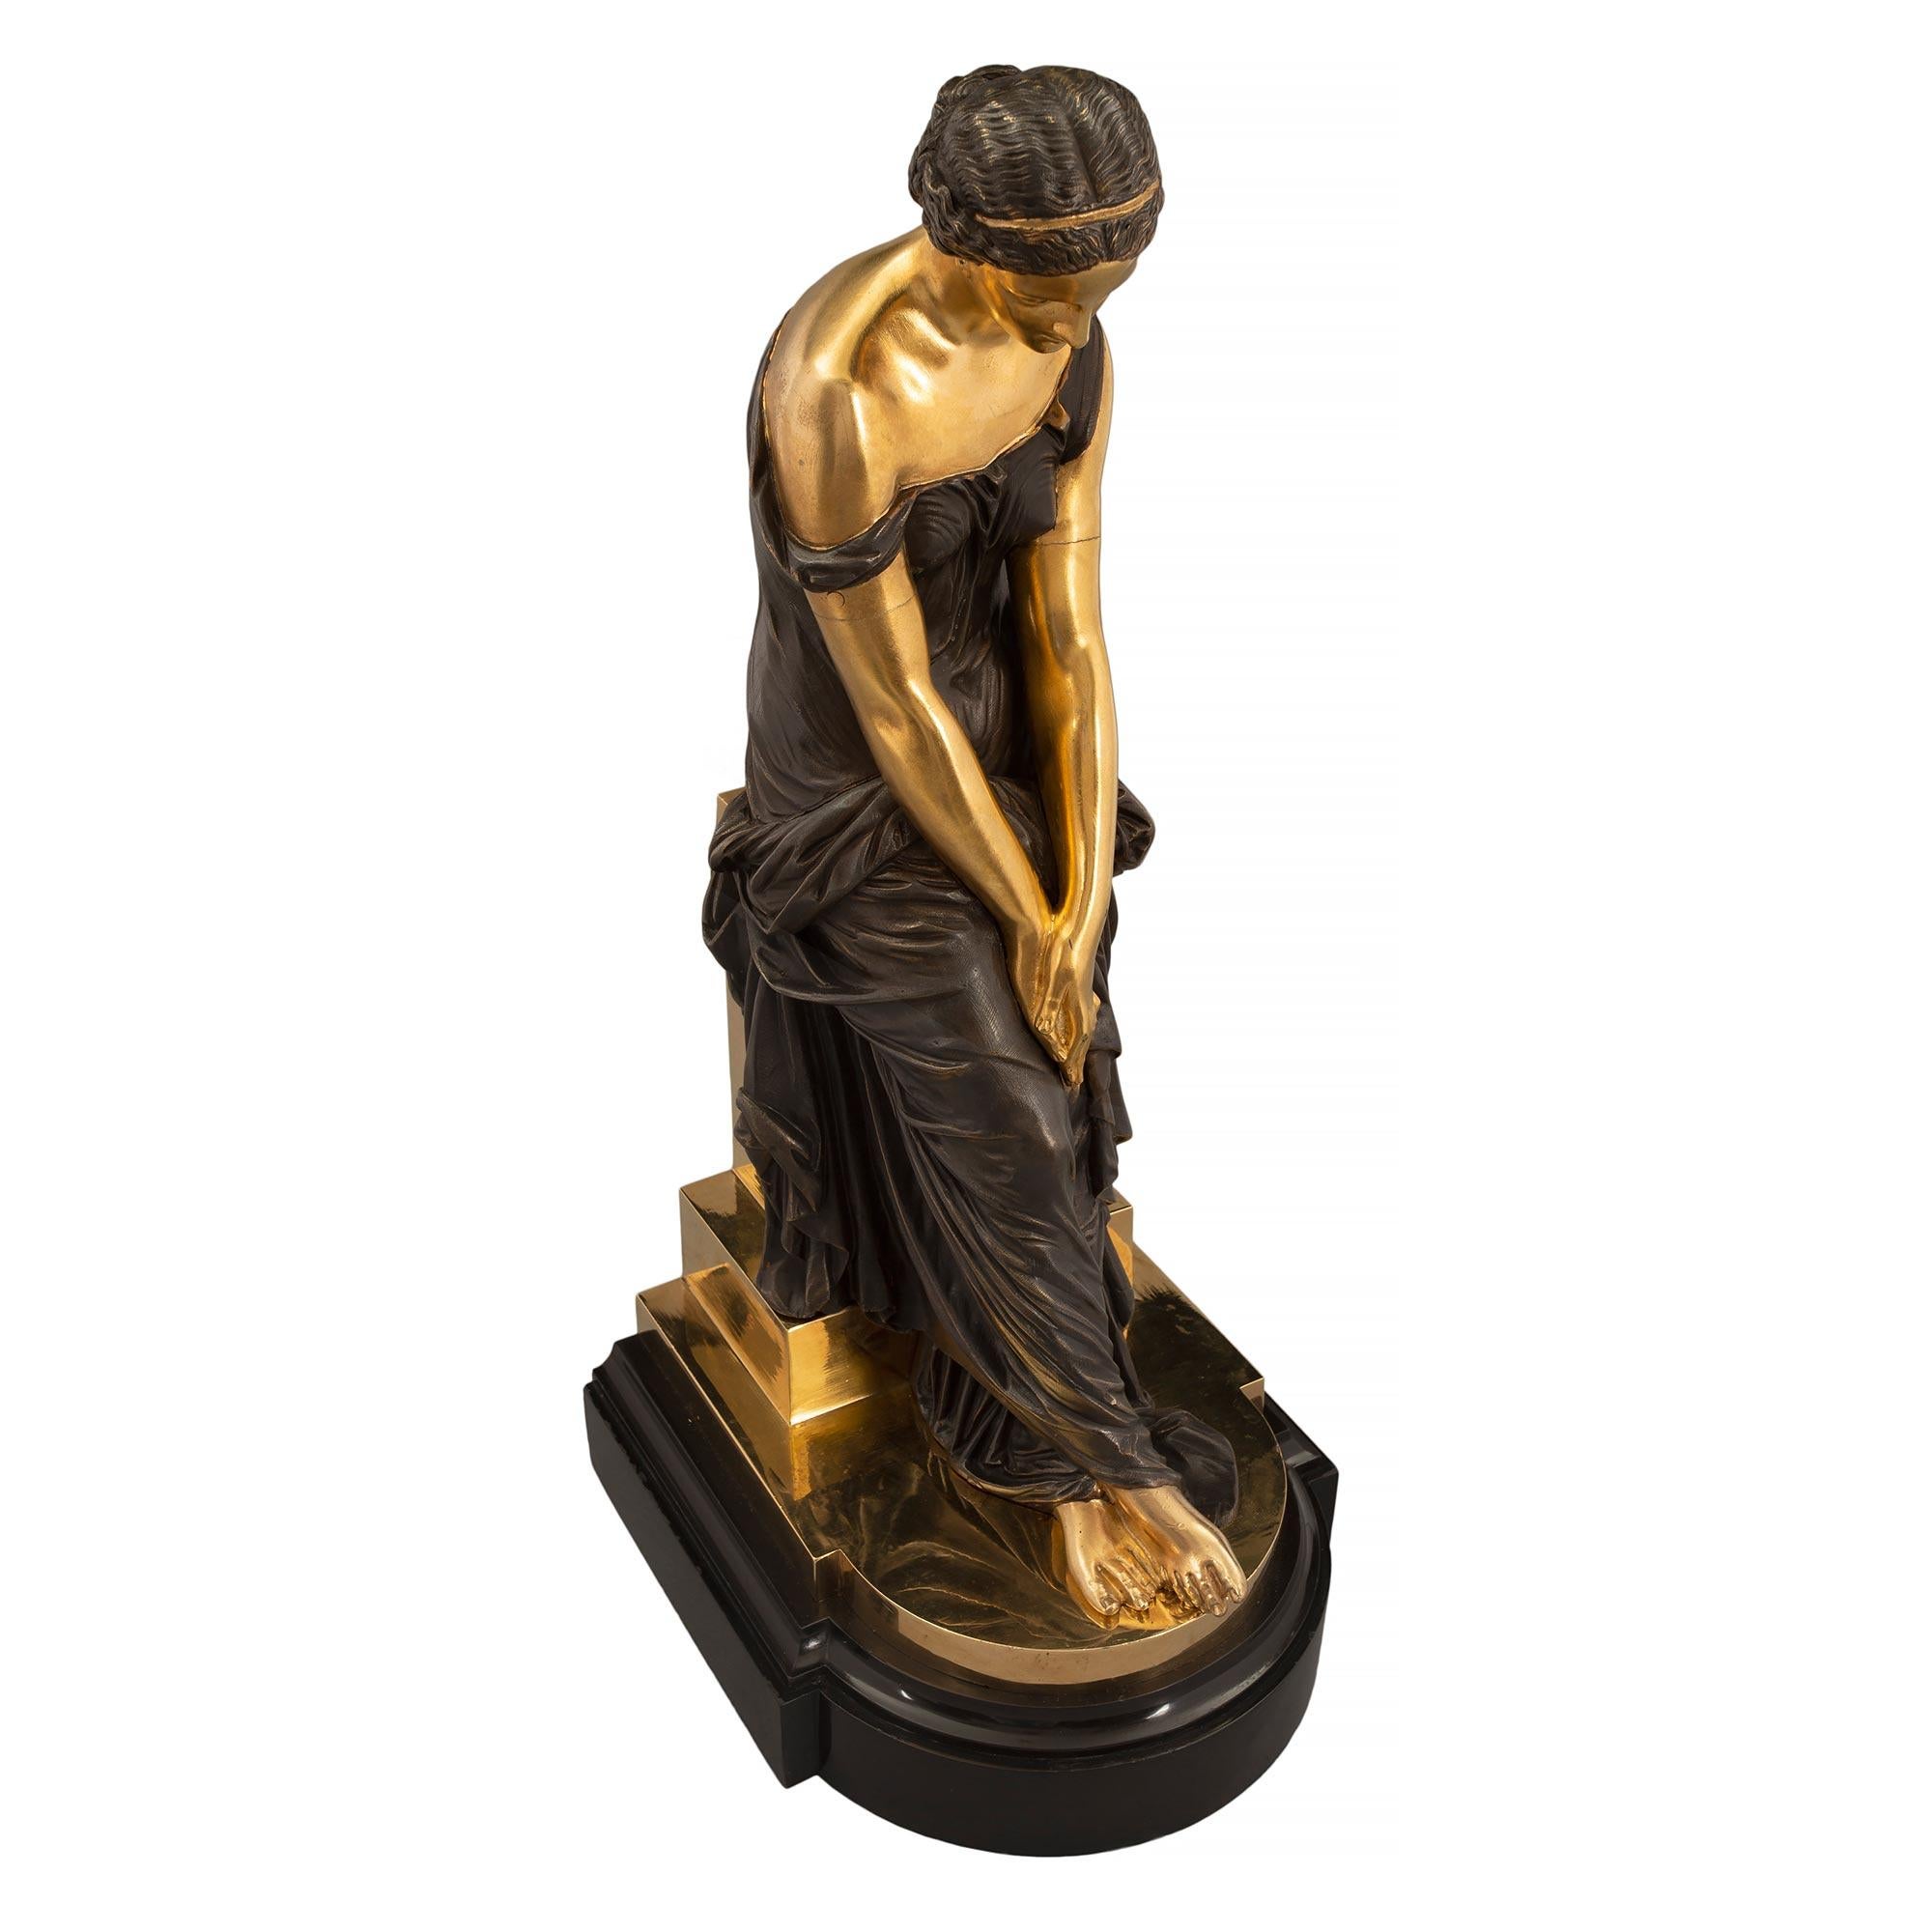 Élégante statue française du milieu du XIXe siècle, de style Louis XVI, en bronze patiné et bronze doré, représentant une jeune fille, signée par Alexander Schoenwerck. Le bronze est surélevé par une impressionnante base tachetée de marbre noir de